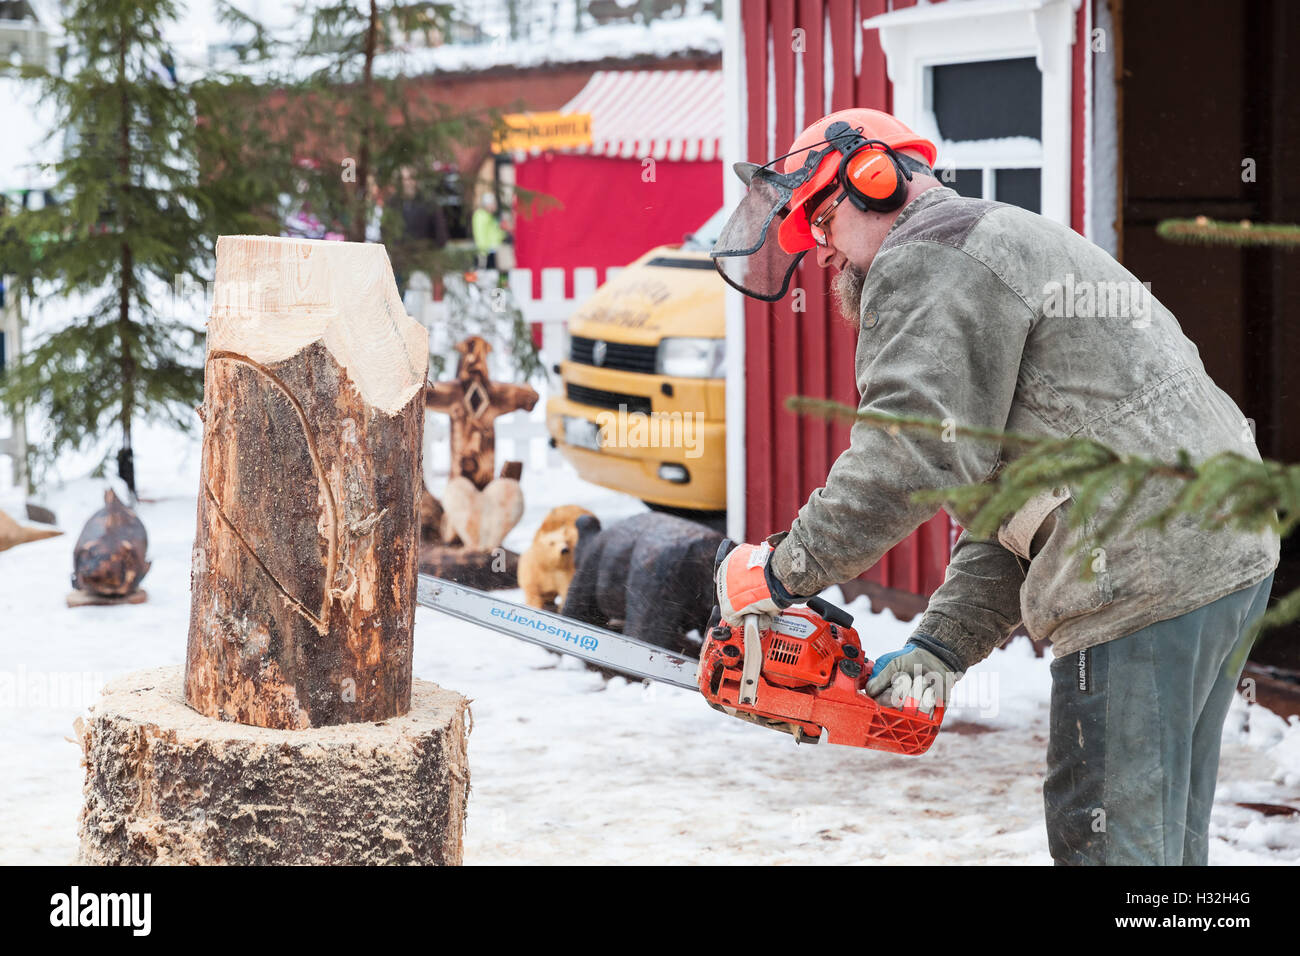 Hamina, Finlandia - 13 de diciembre de 2014: maestro escultor finlandés con una motosierra produce la escultura de madera áspera Foto de stock